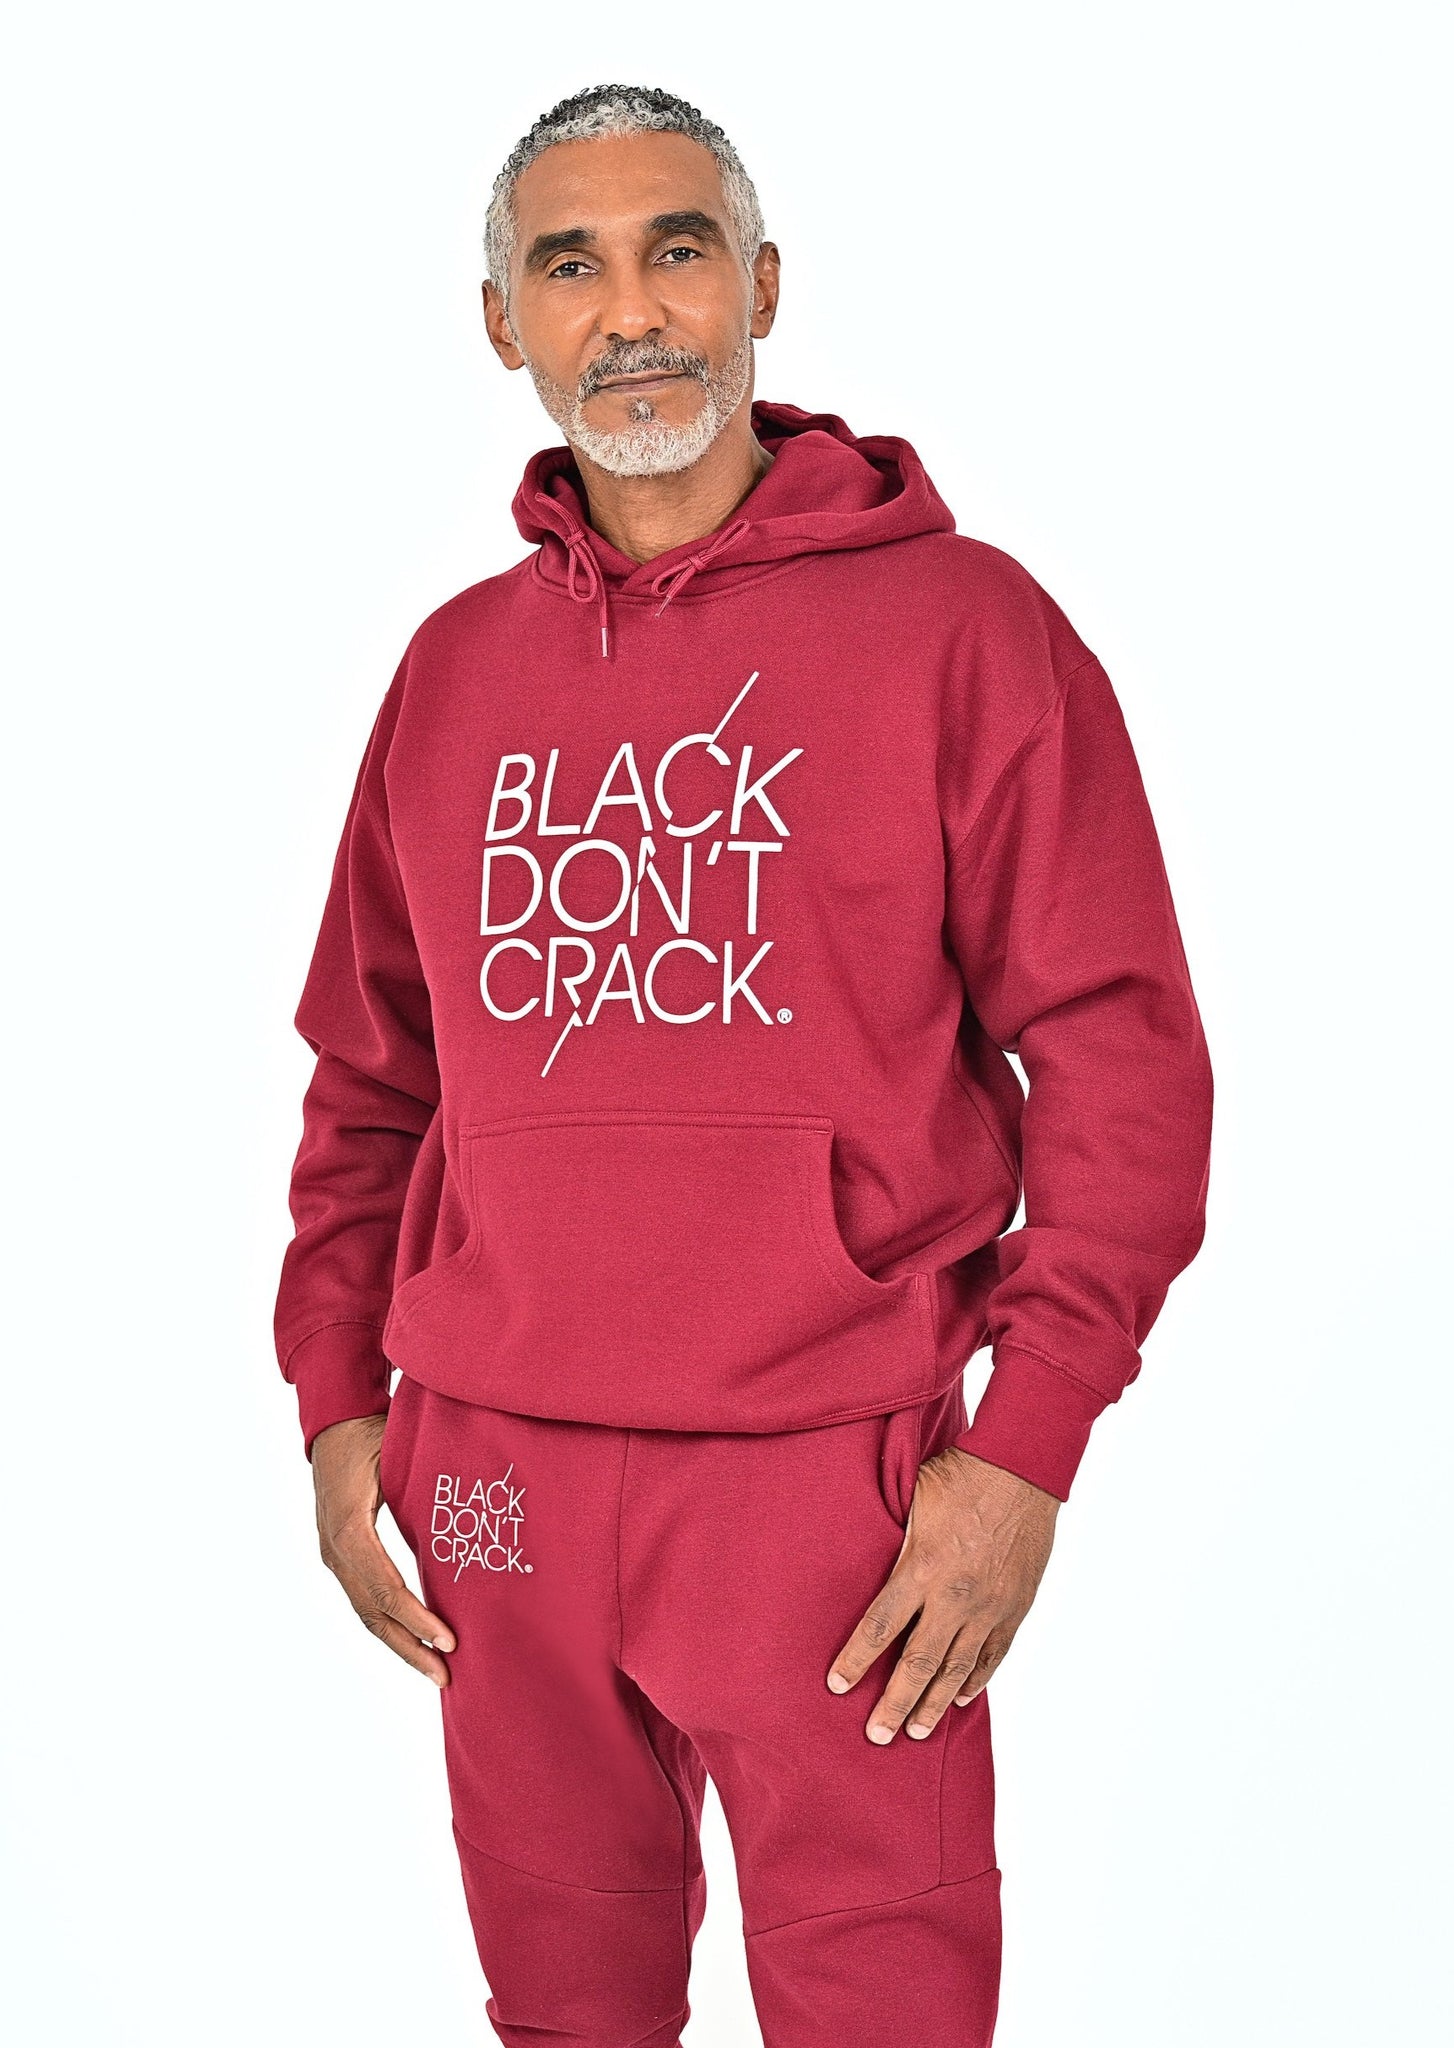 Black-Don't-Crack-Burgundy-Hoodie-Sweatshirt